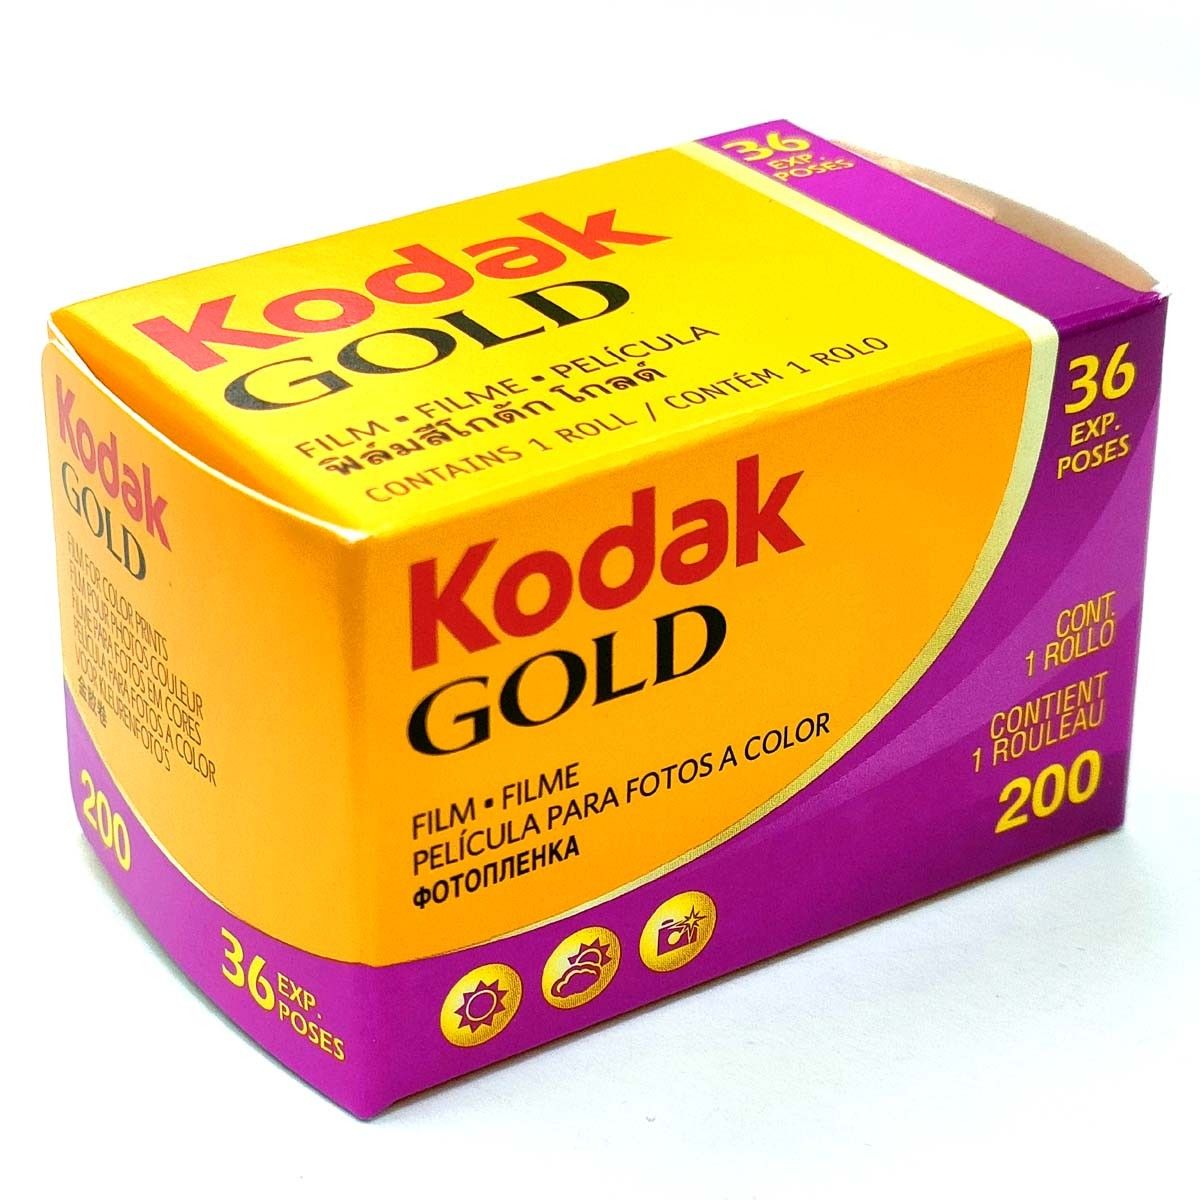 GOLD200-36枚撮【2本】Kodak カラーネガフィルム 135/35mm 新品 コダック 0086806033992 新品